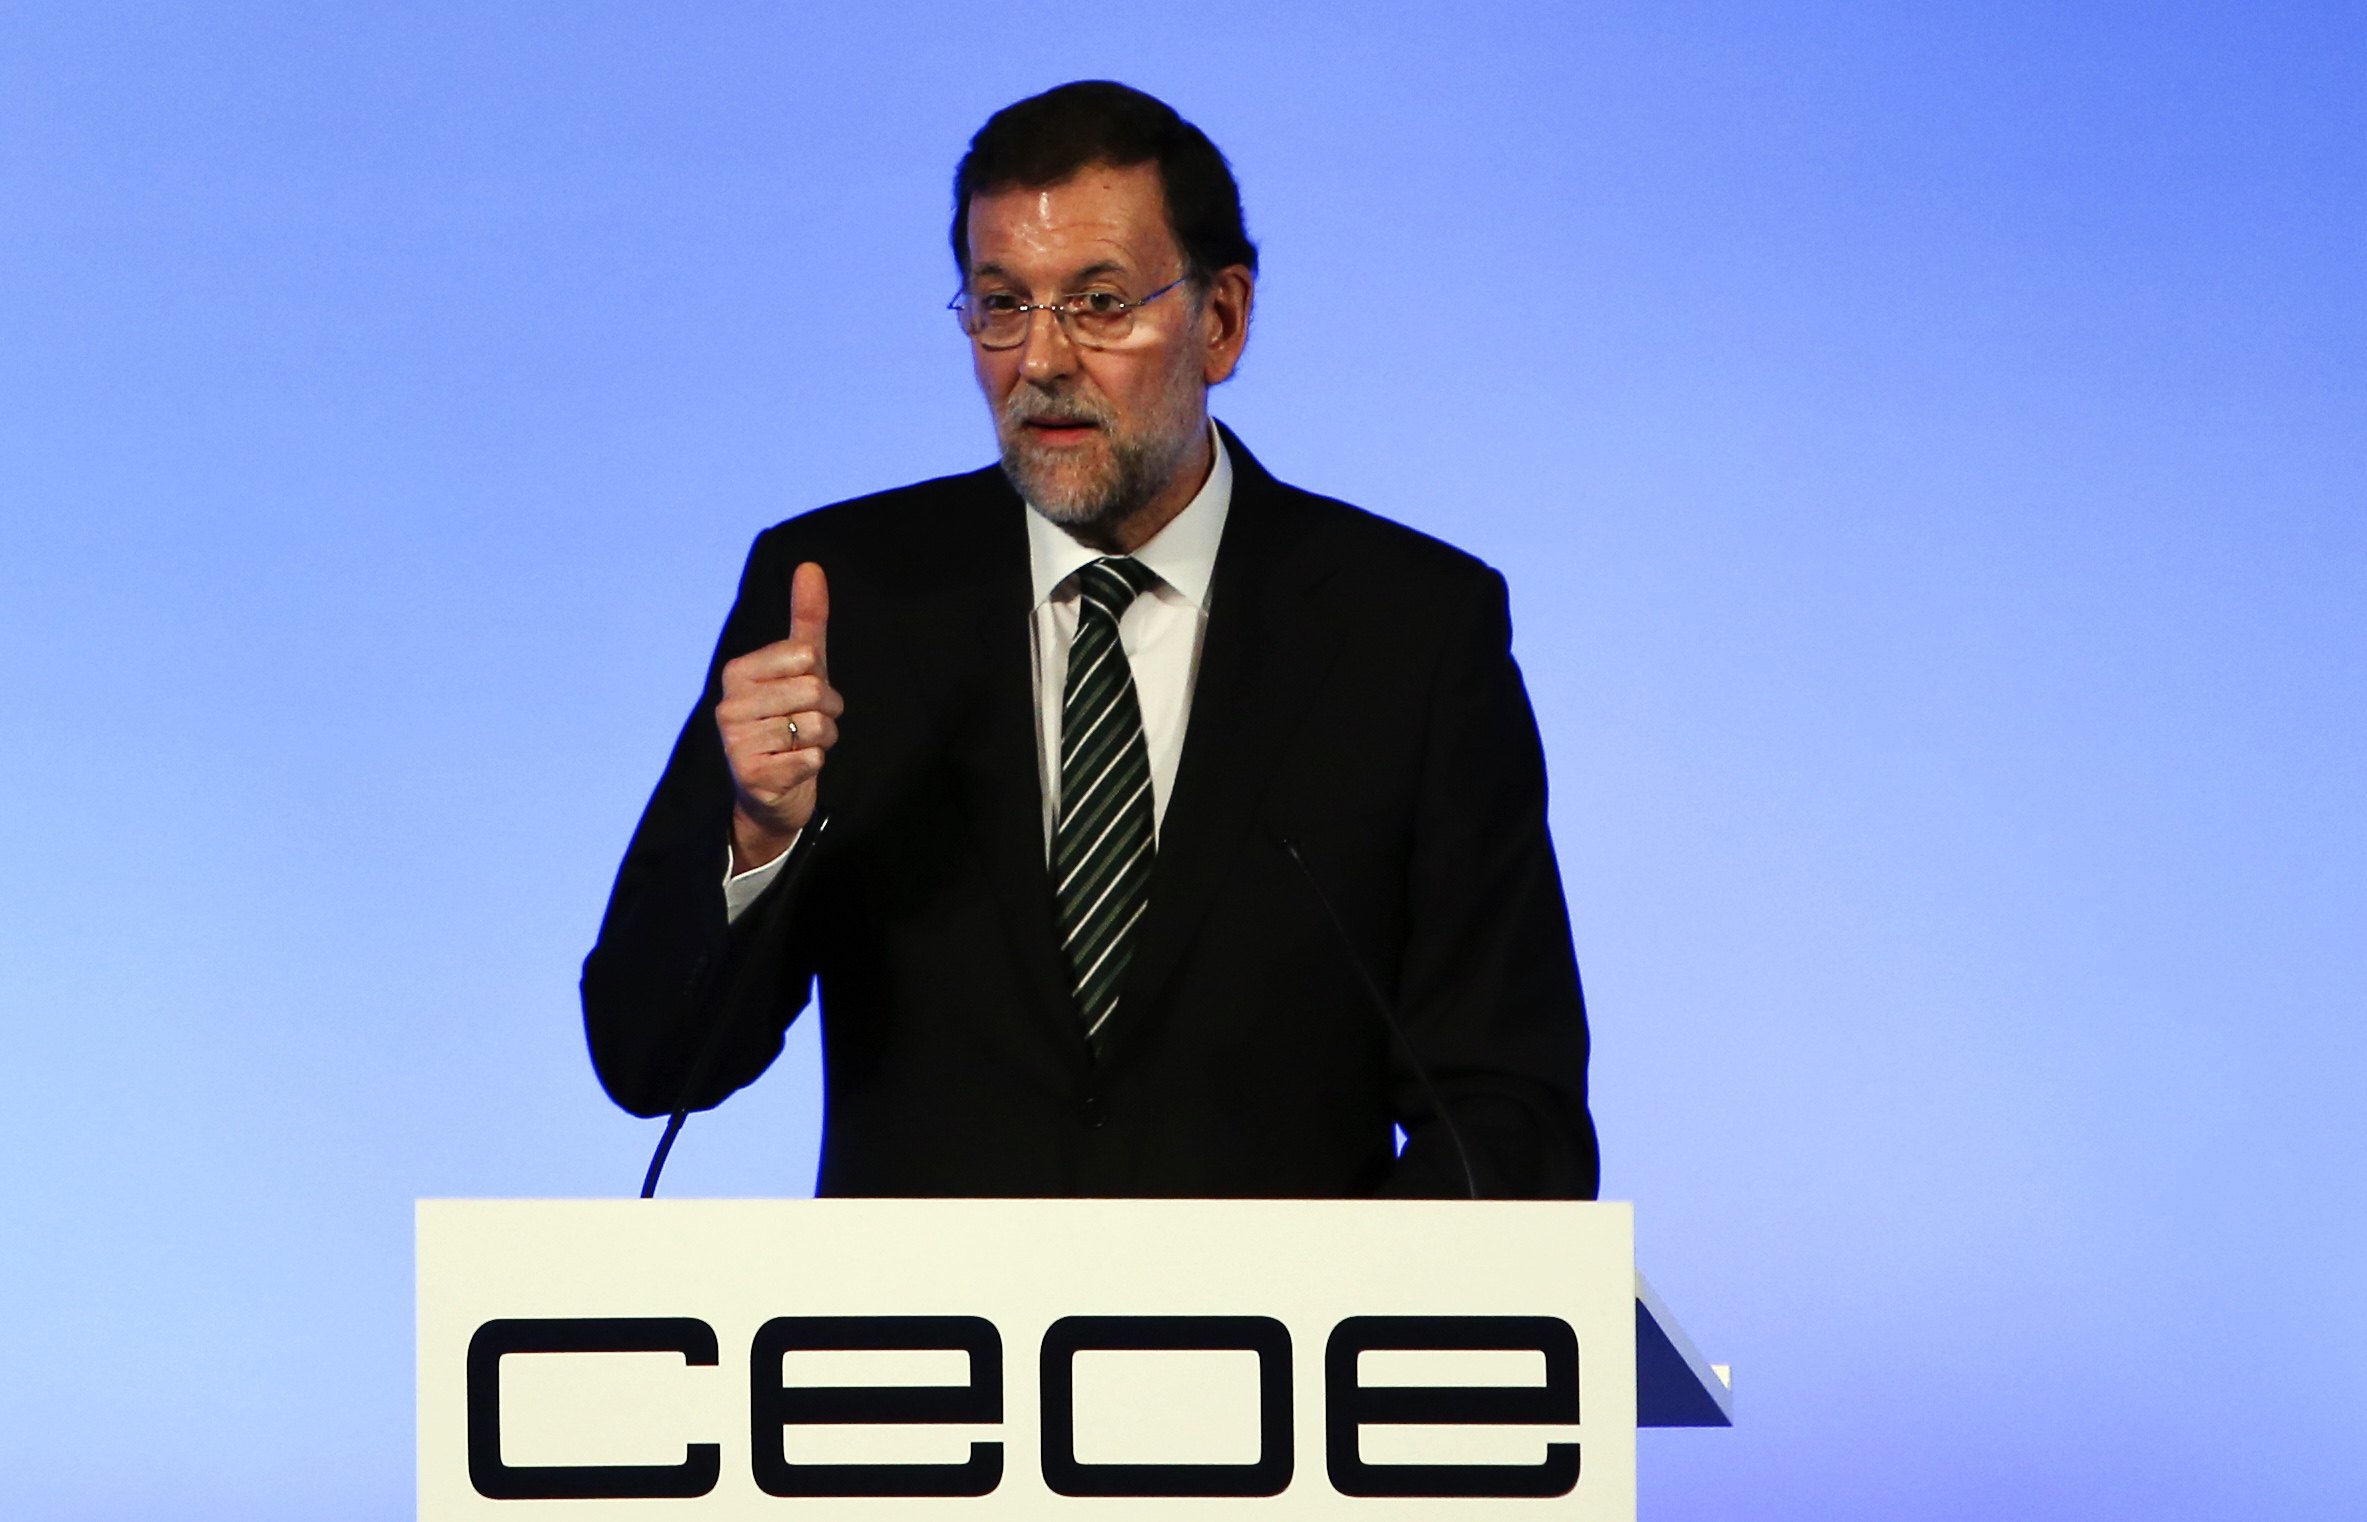 Ισπανός πρωθυπουργός προς ΕΕ: Πάρτε επιτέλους συγκεκριμένες αποφάσεις για την διάσωση του ευρώ!